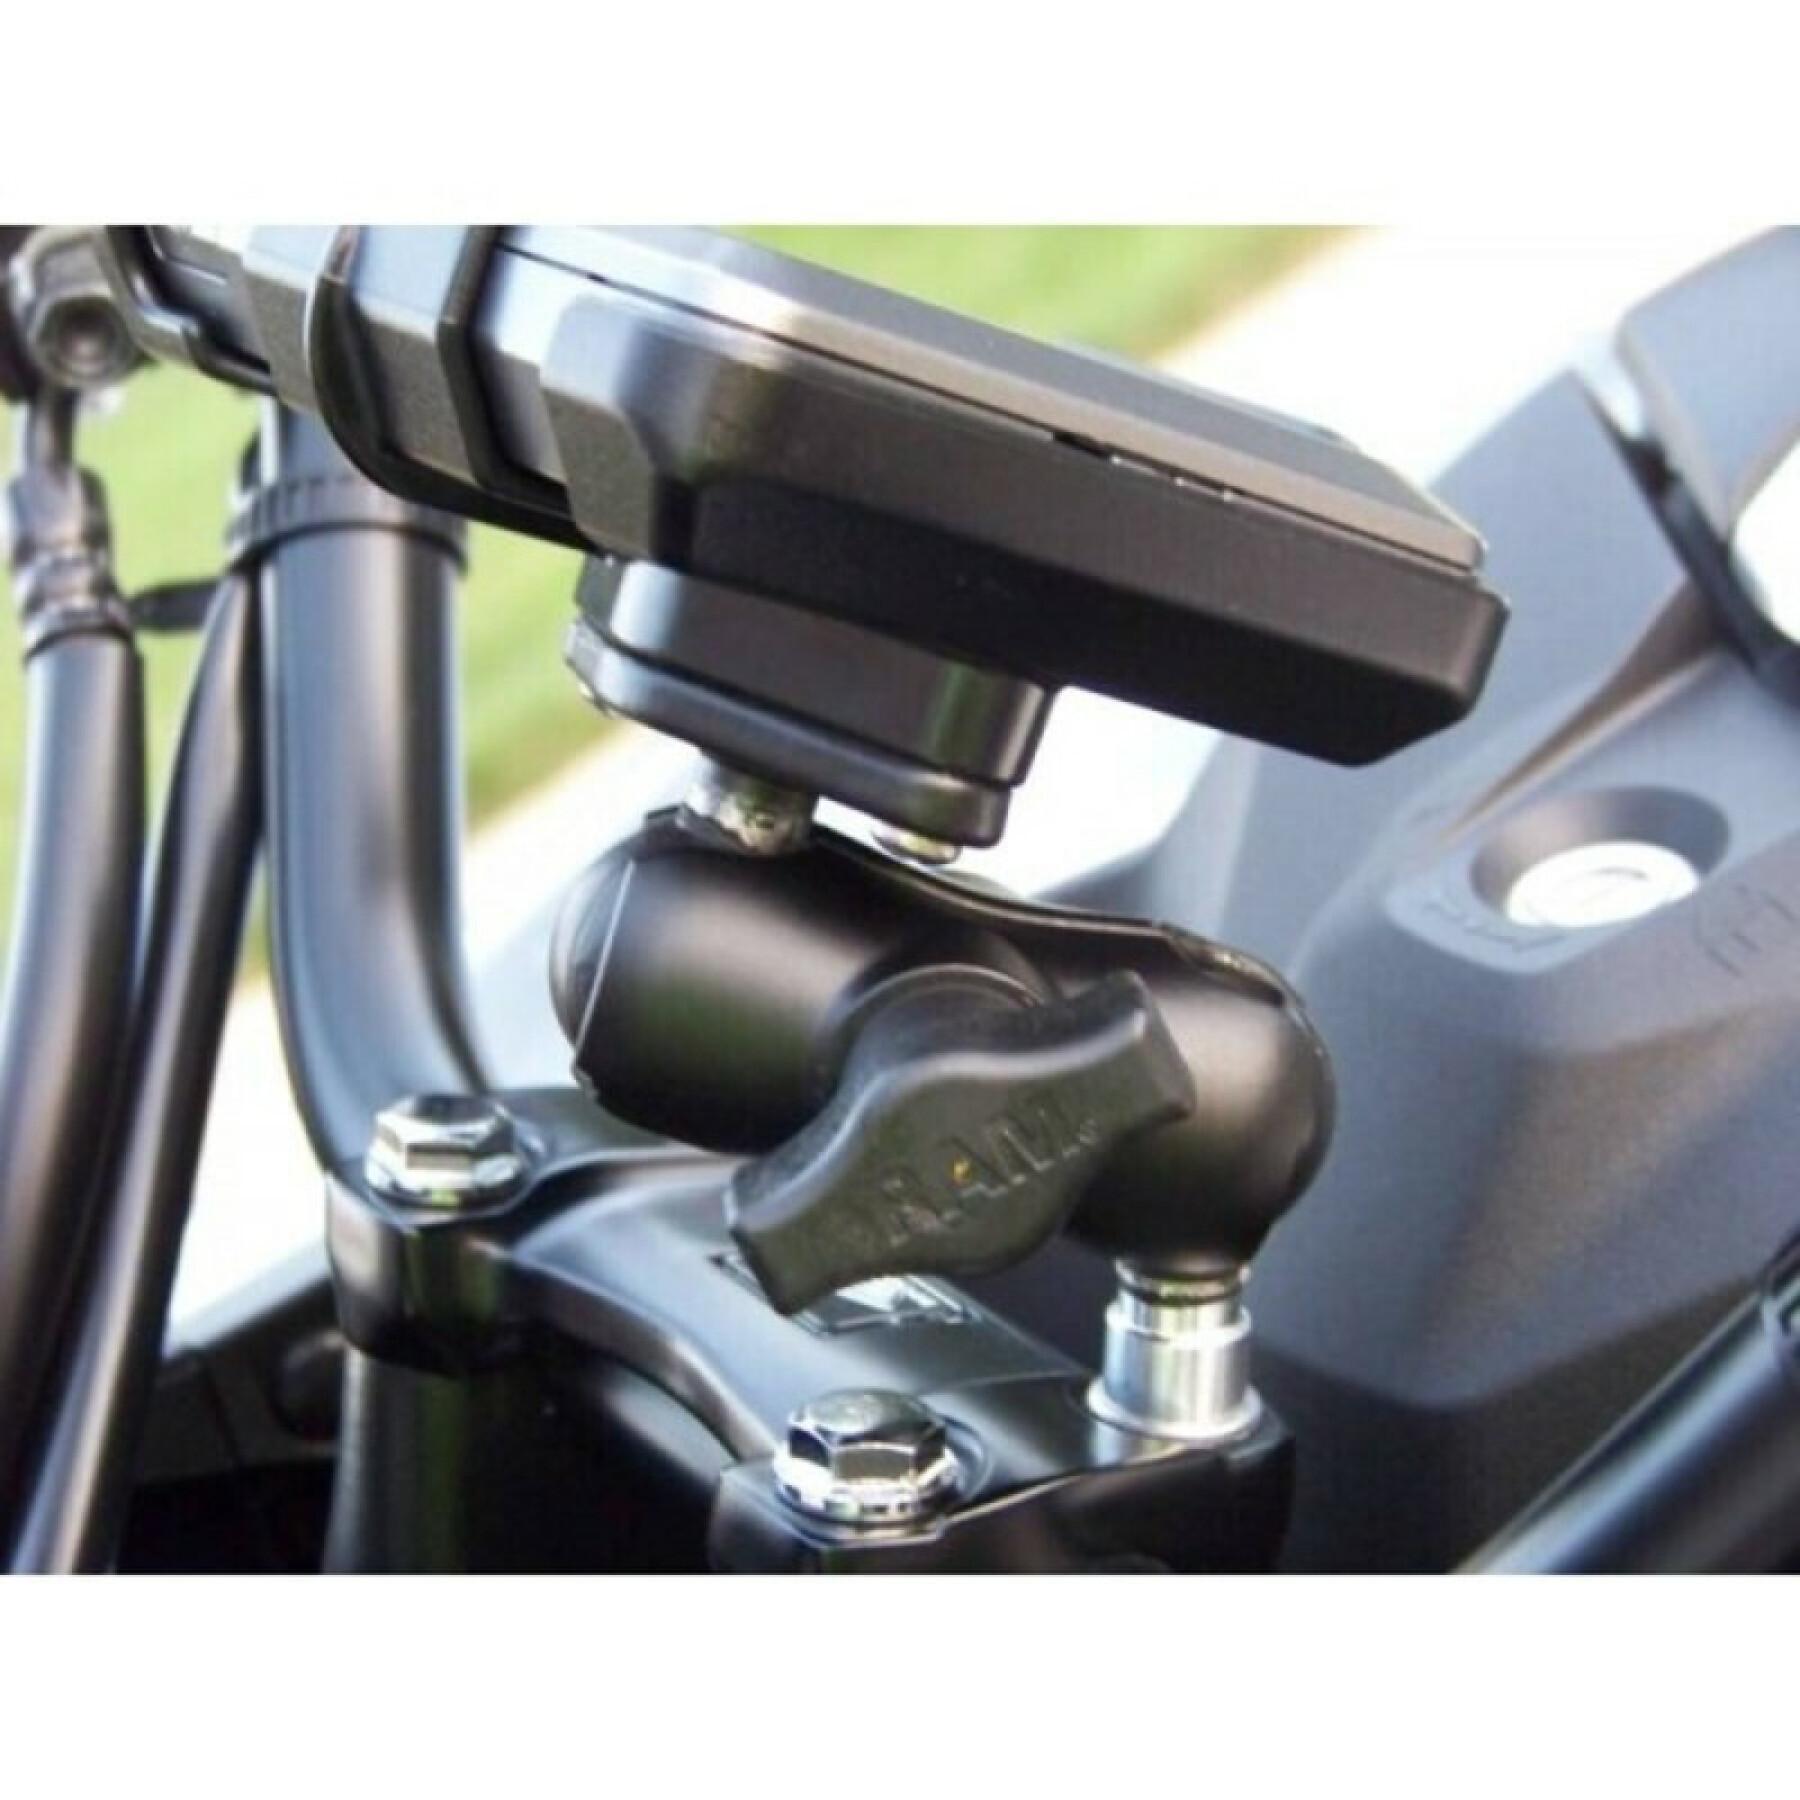 Suporte de Smartphone para base de motocicleta, fixação na guarda do gatilho através de parafusos de bola b RAM Mounts